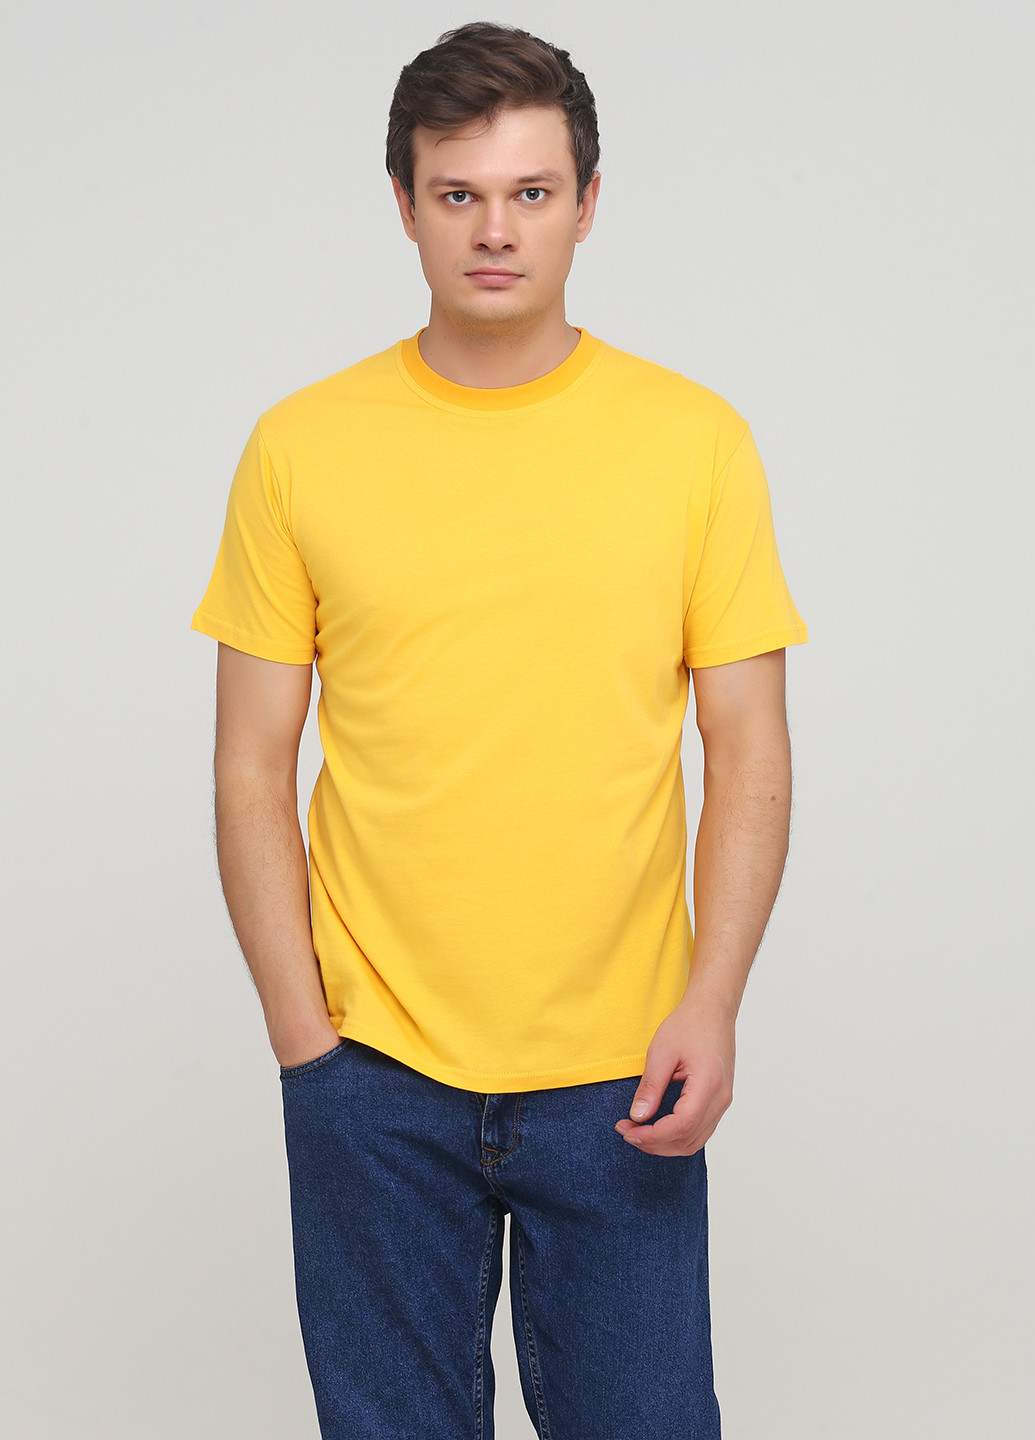 Жовта футболка чоловіча 19м319-17 синя(електро) з коротким рукавом Malta